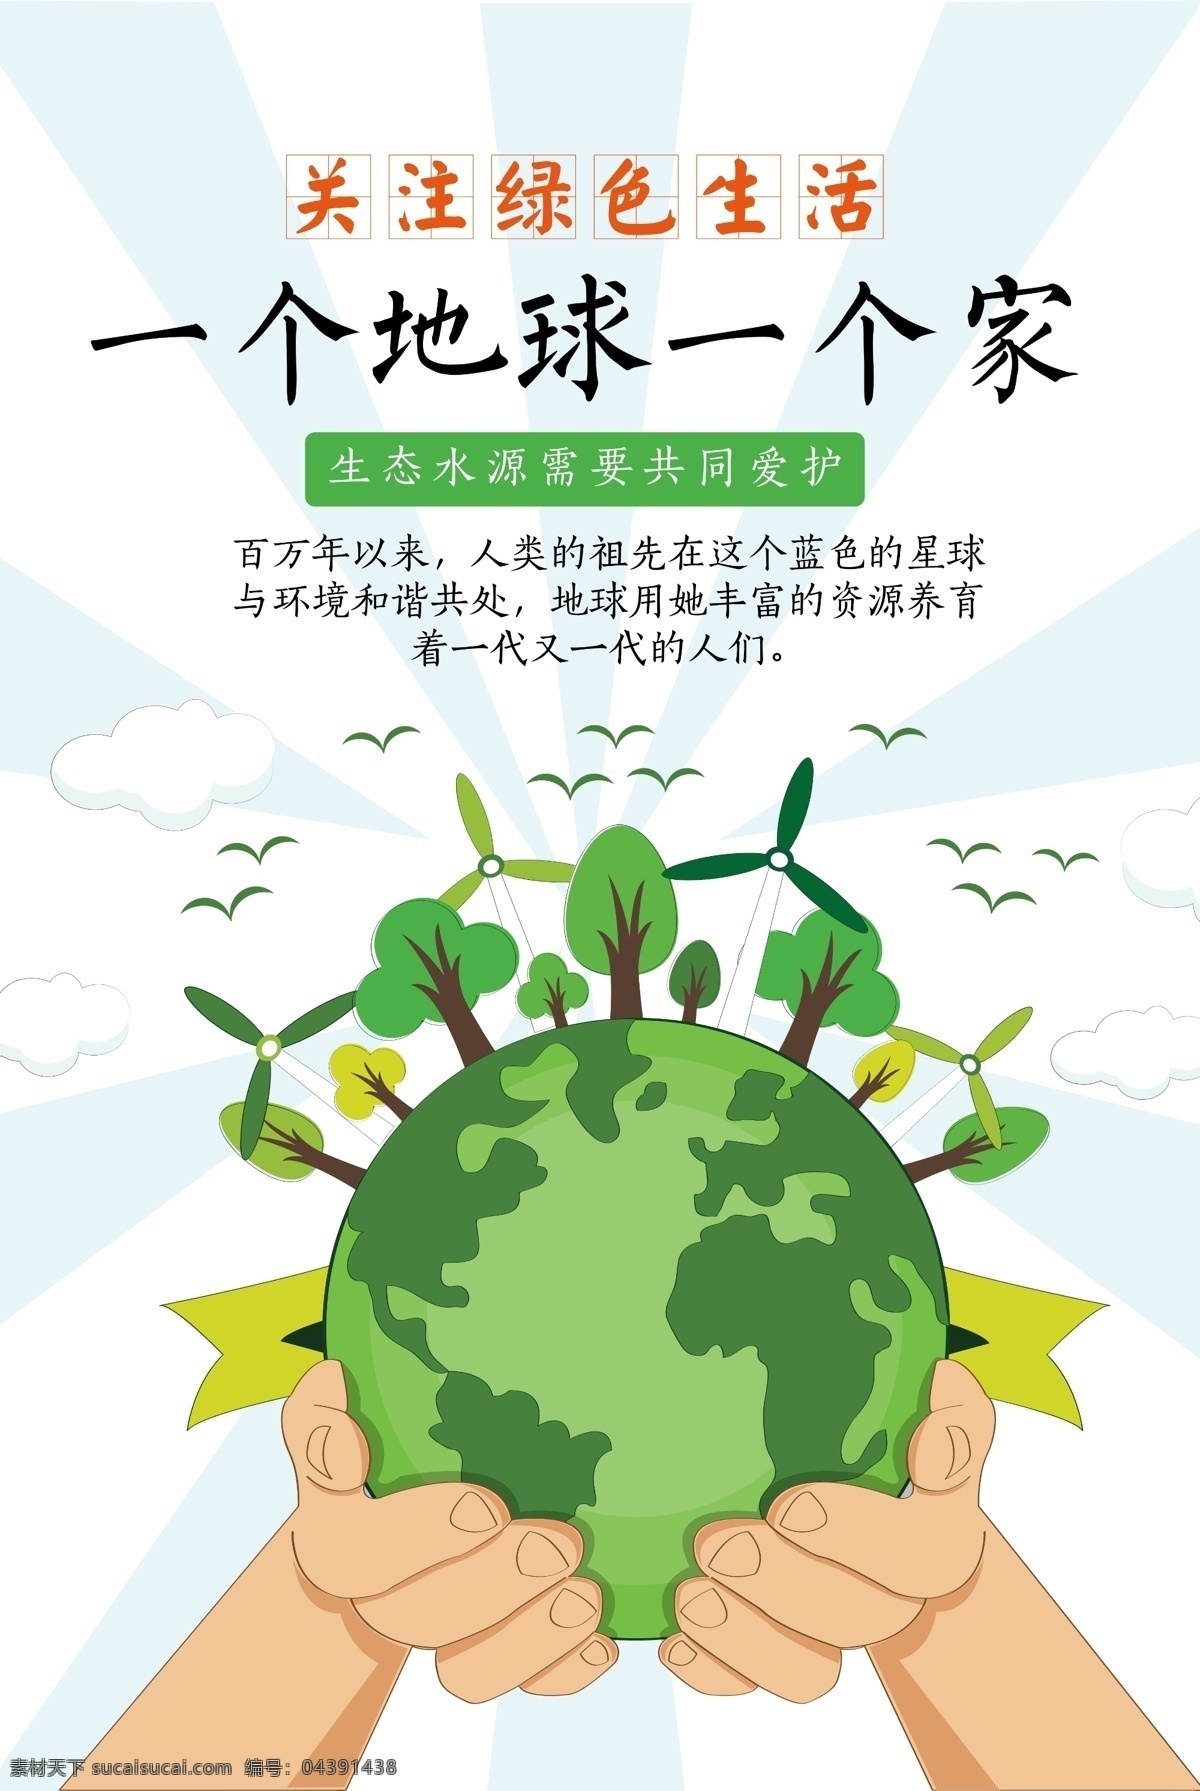 爱护 地球 创意 公益 海报 绿植 环境保护 爱护环境 保护 种植 保护家园 环保 我家 手绘 插画 风格 保护地球 绿色能源 能源海报 创意地球 创意公益 地球创意